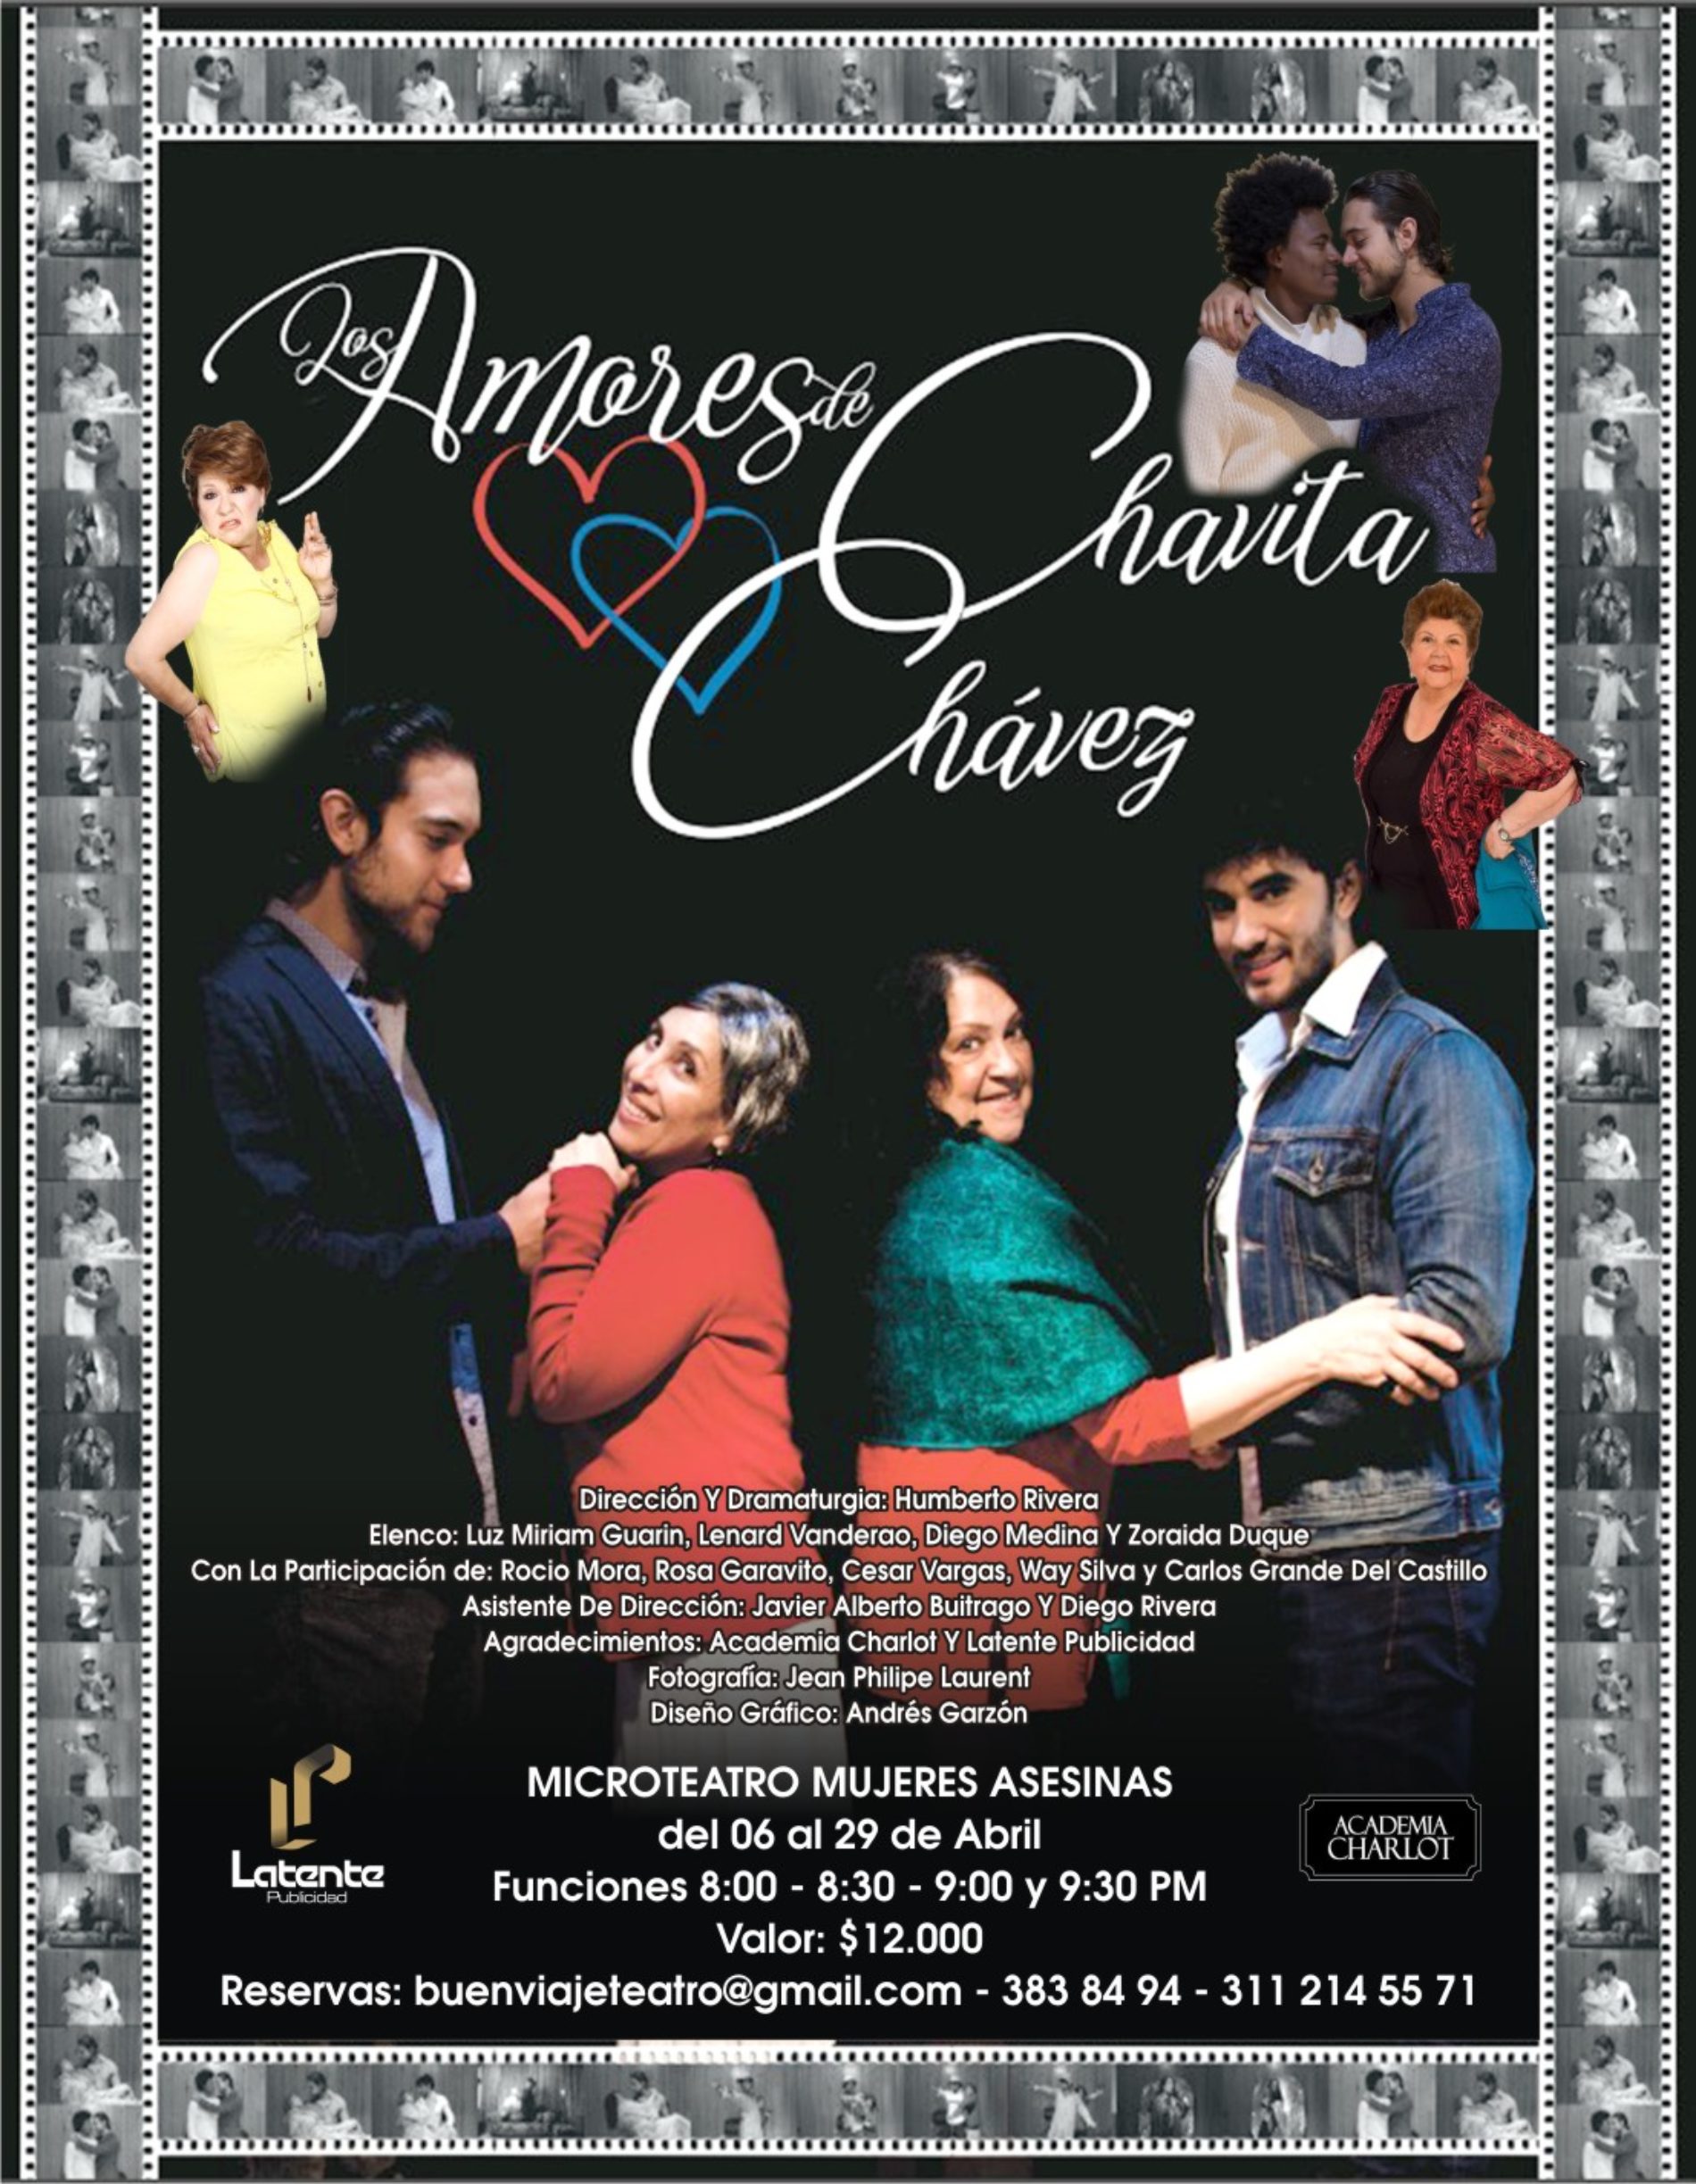 Los Amores de Chavita Chávez en Buen Viaje Teatro